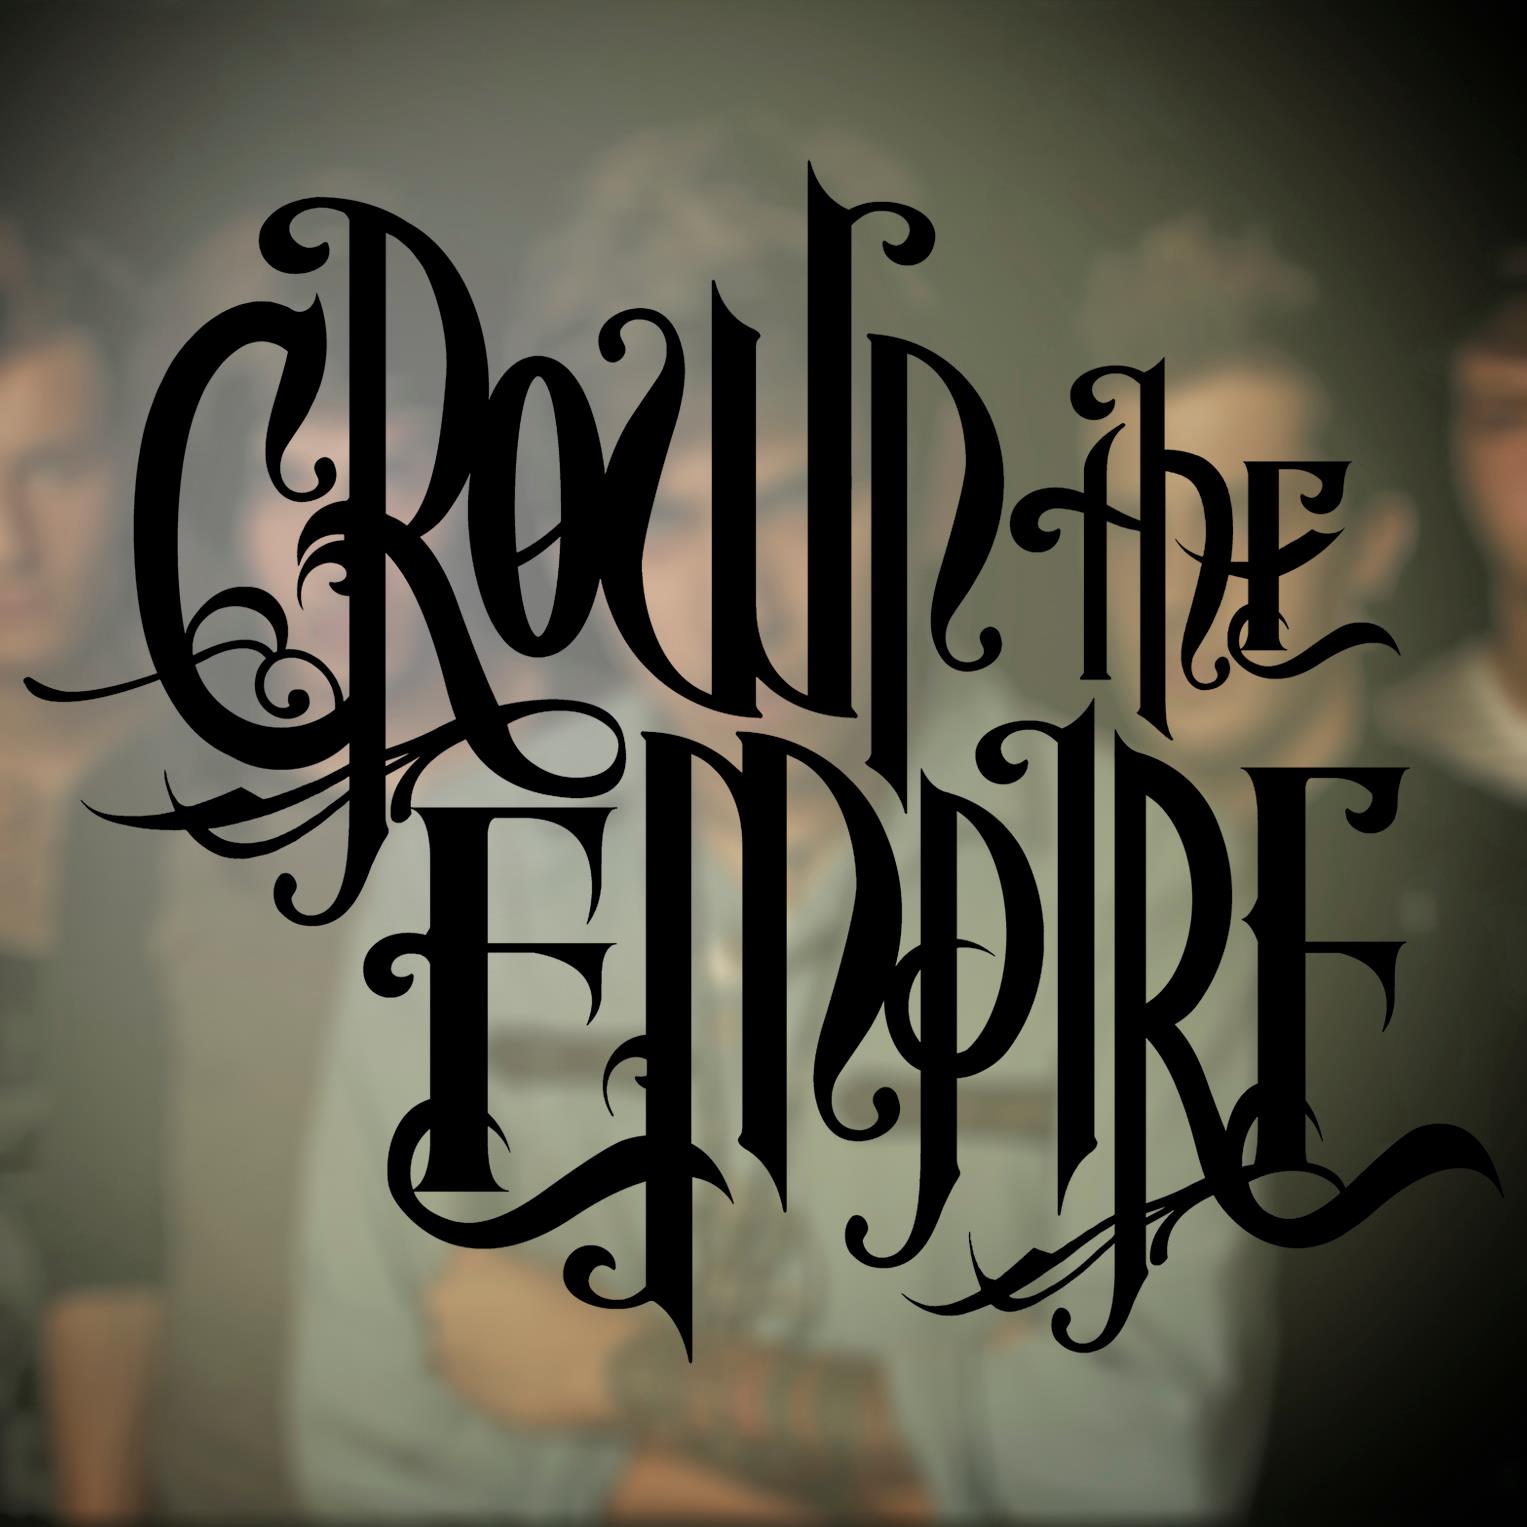 Crown The Empire Logo. Crown The Empire. Logos